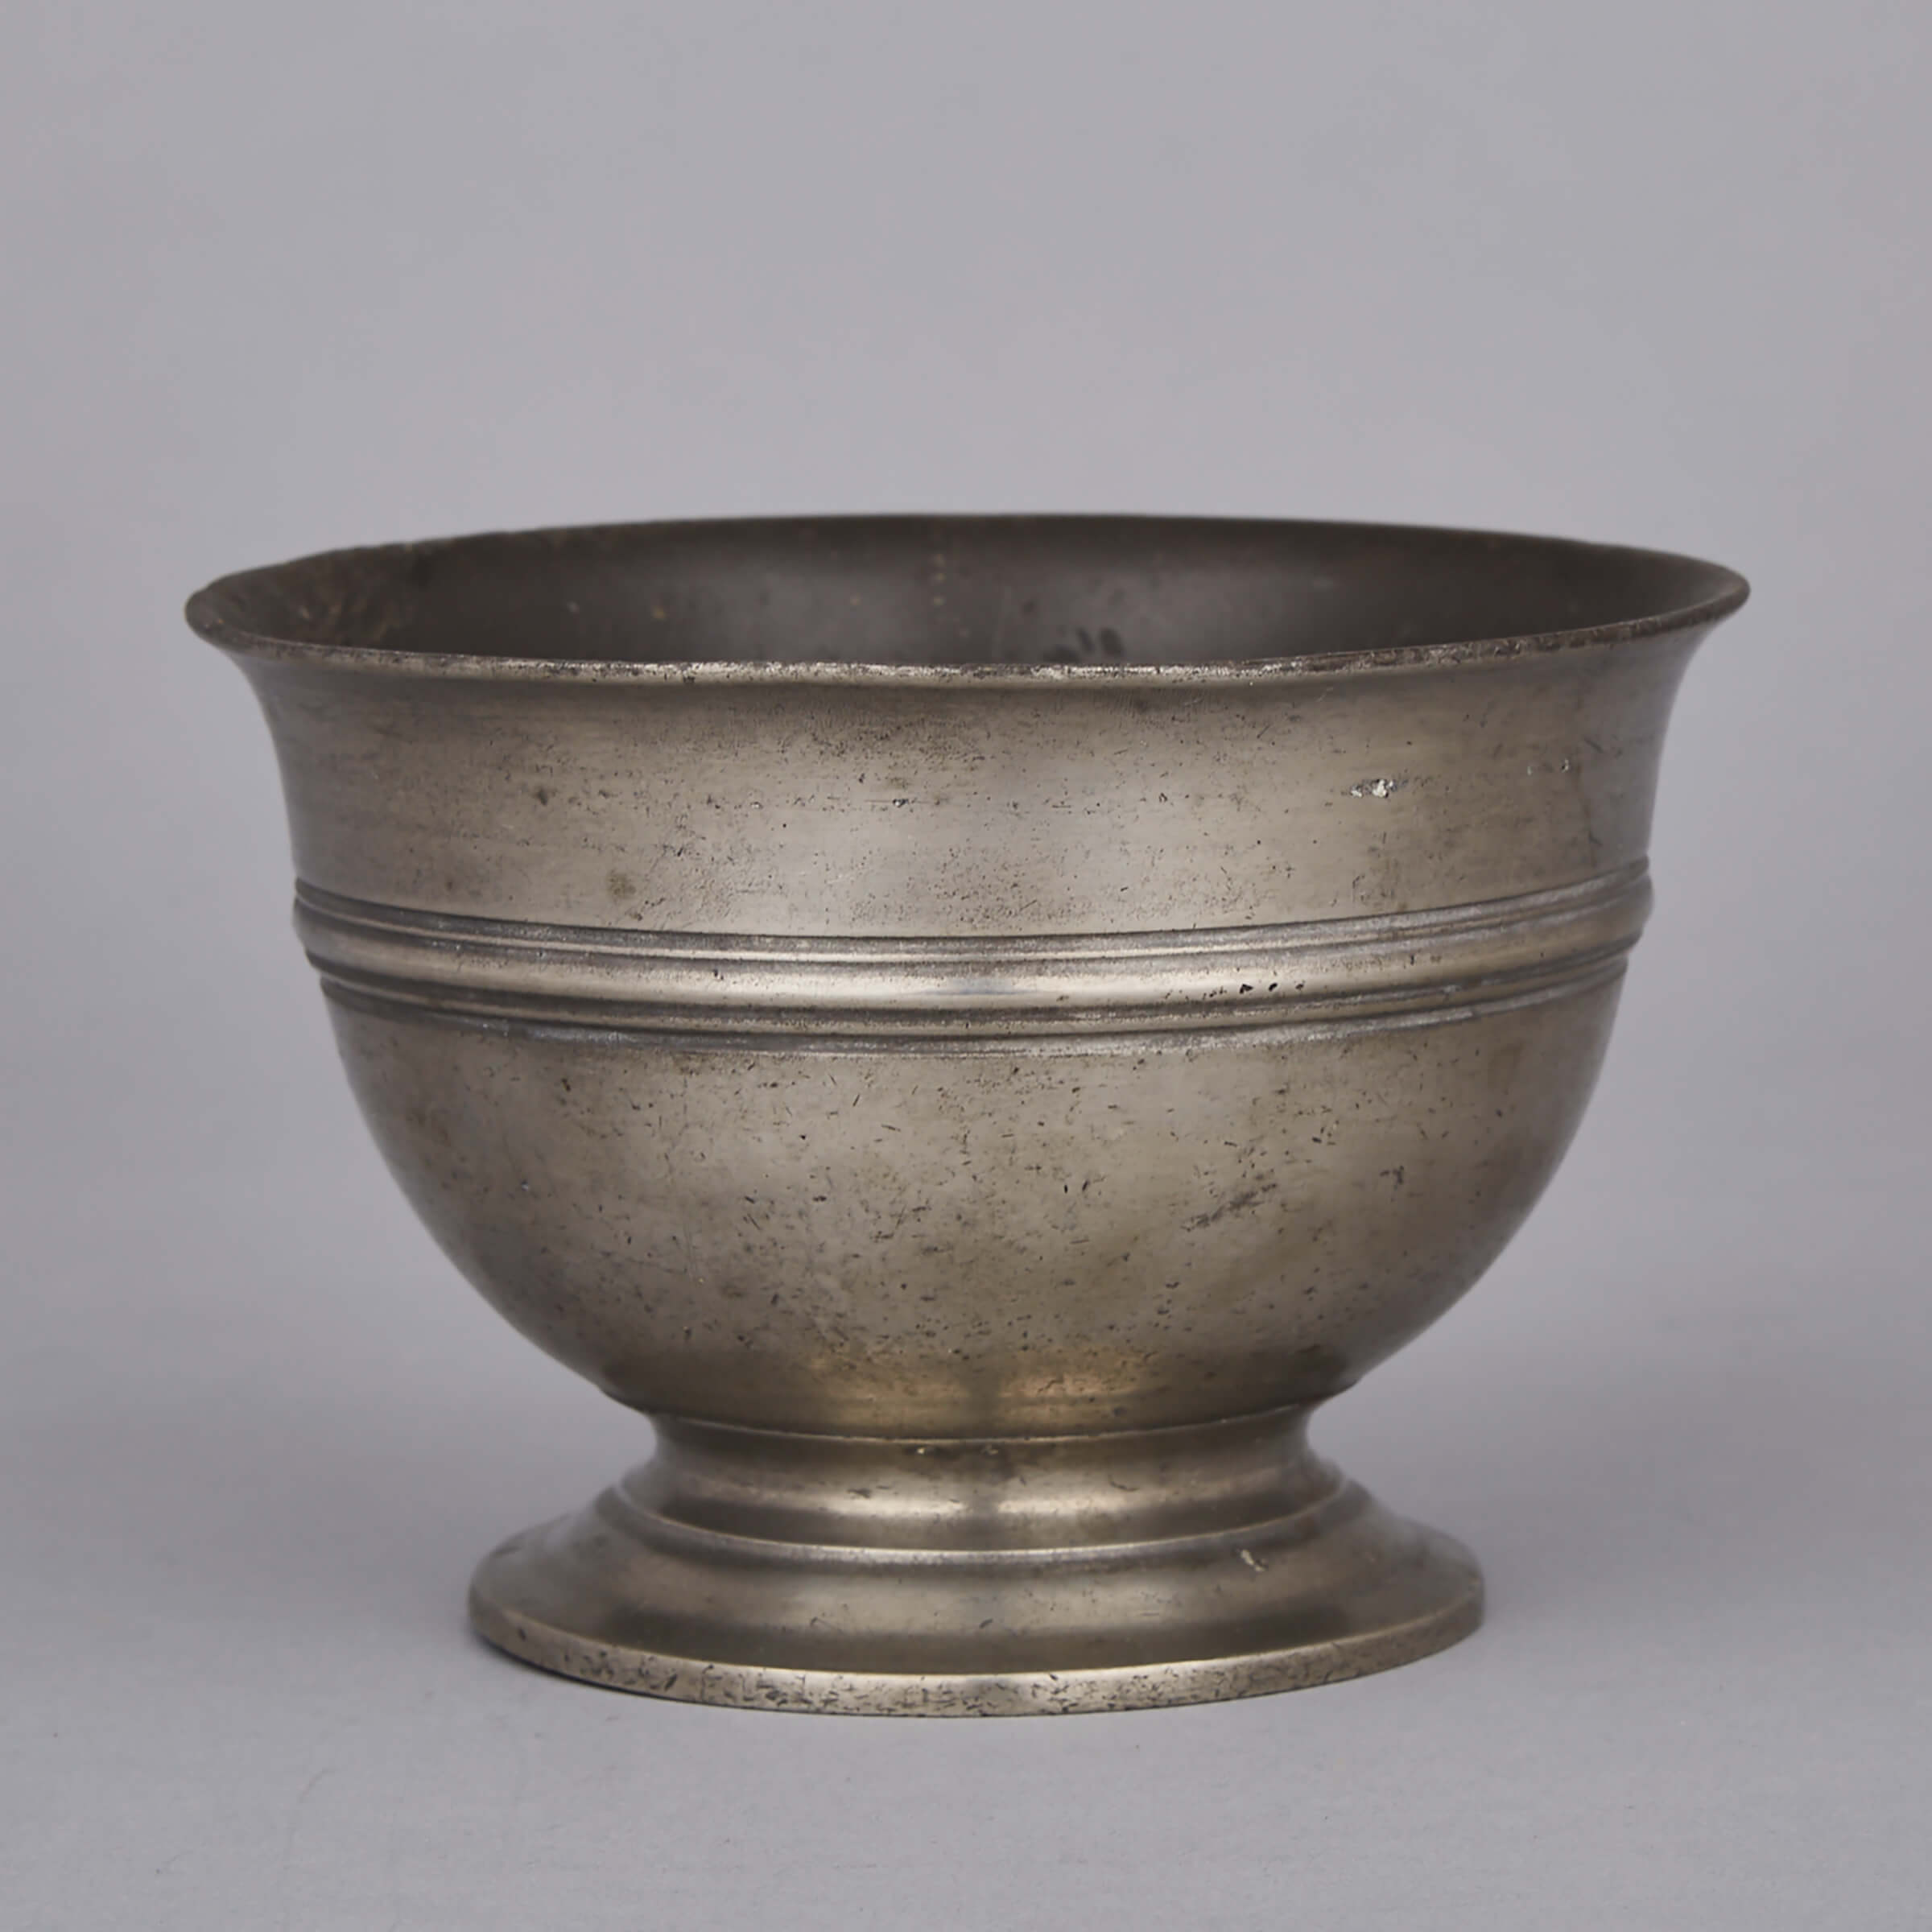 English Pewter Broth Bowl, c.1700